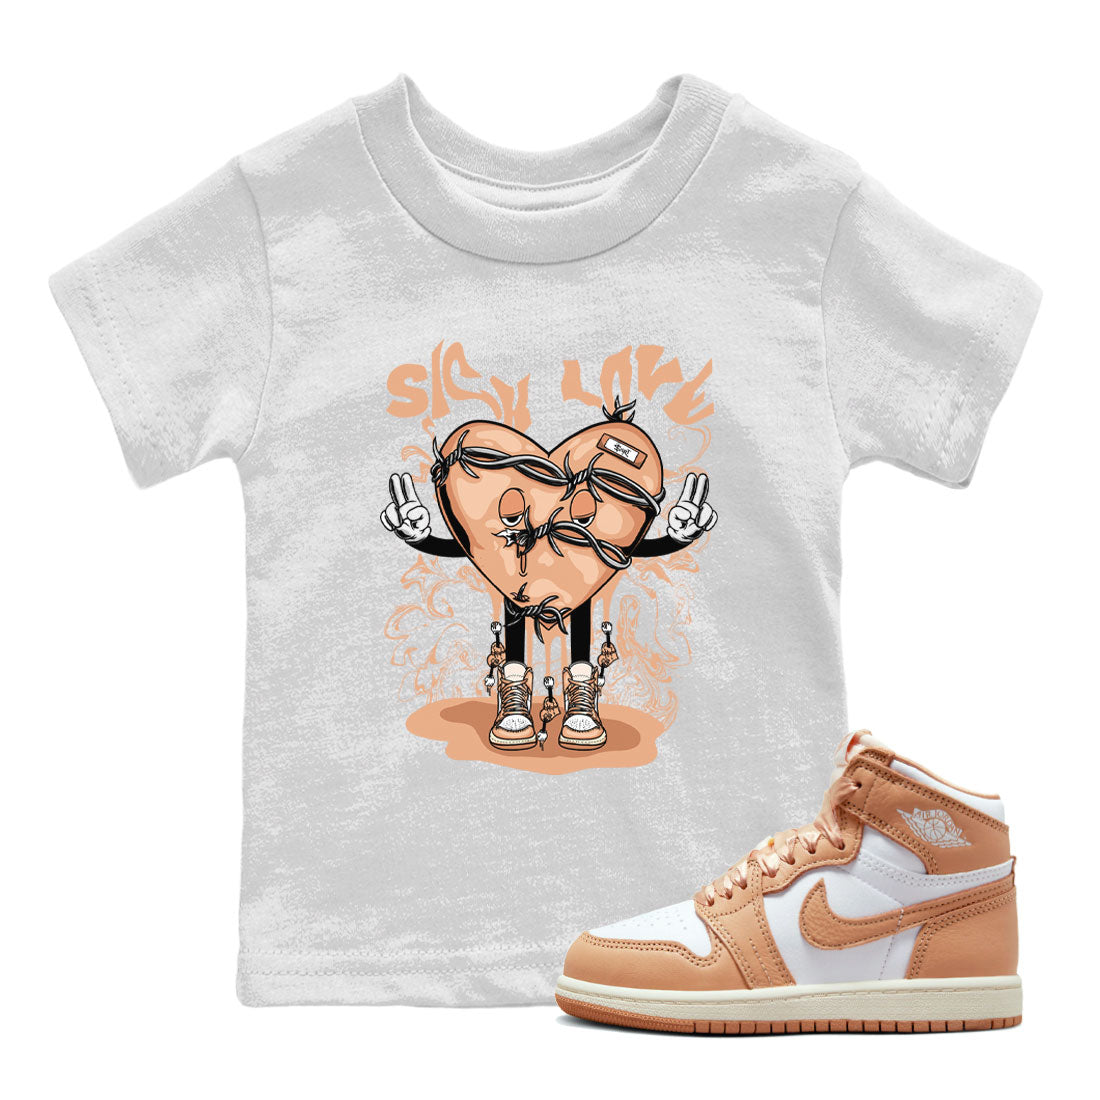 Air Jordan 1 High OG WMNS Praline shirt to match jordans Sick Love Streetwear Sneaker Shirt Air Jordan 1 Praline Drip Gear Zone Sneaker Matching Clothing Baby Toddler White 1 T-Shirt